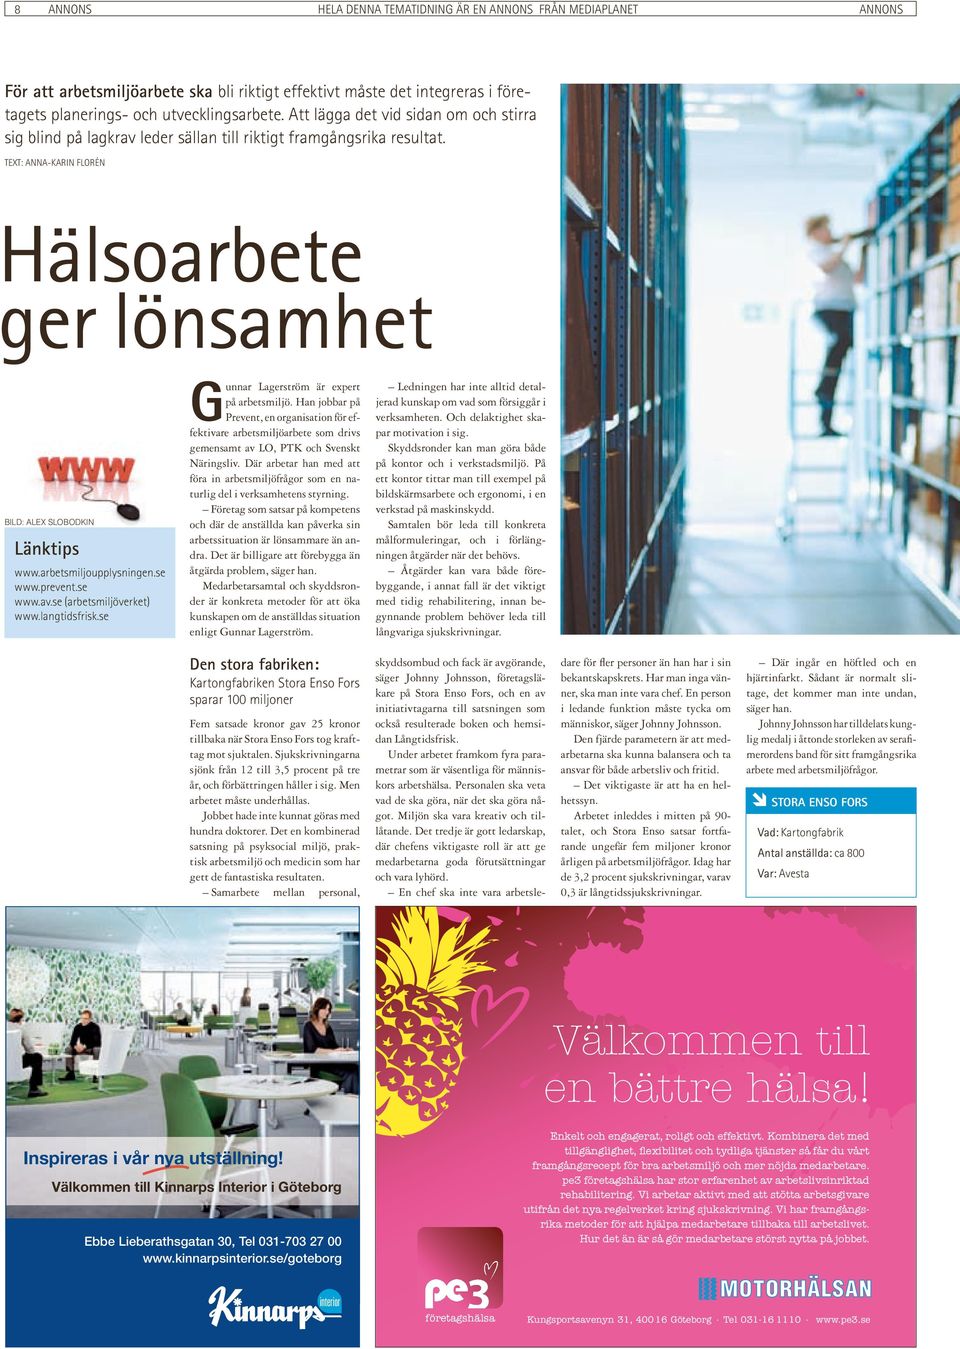 arbetsmiljoupplysningen.se www.prevent.se www.av.se (arbetsmiljöverket) www.langtidsfrisk.se Gunnar Lagerström är expert på arbetsmiljö.